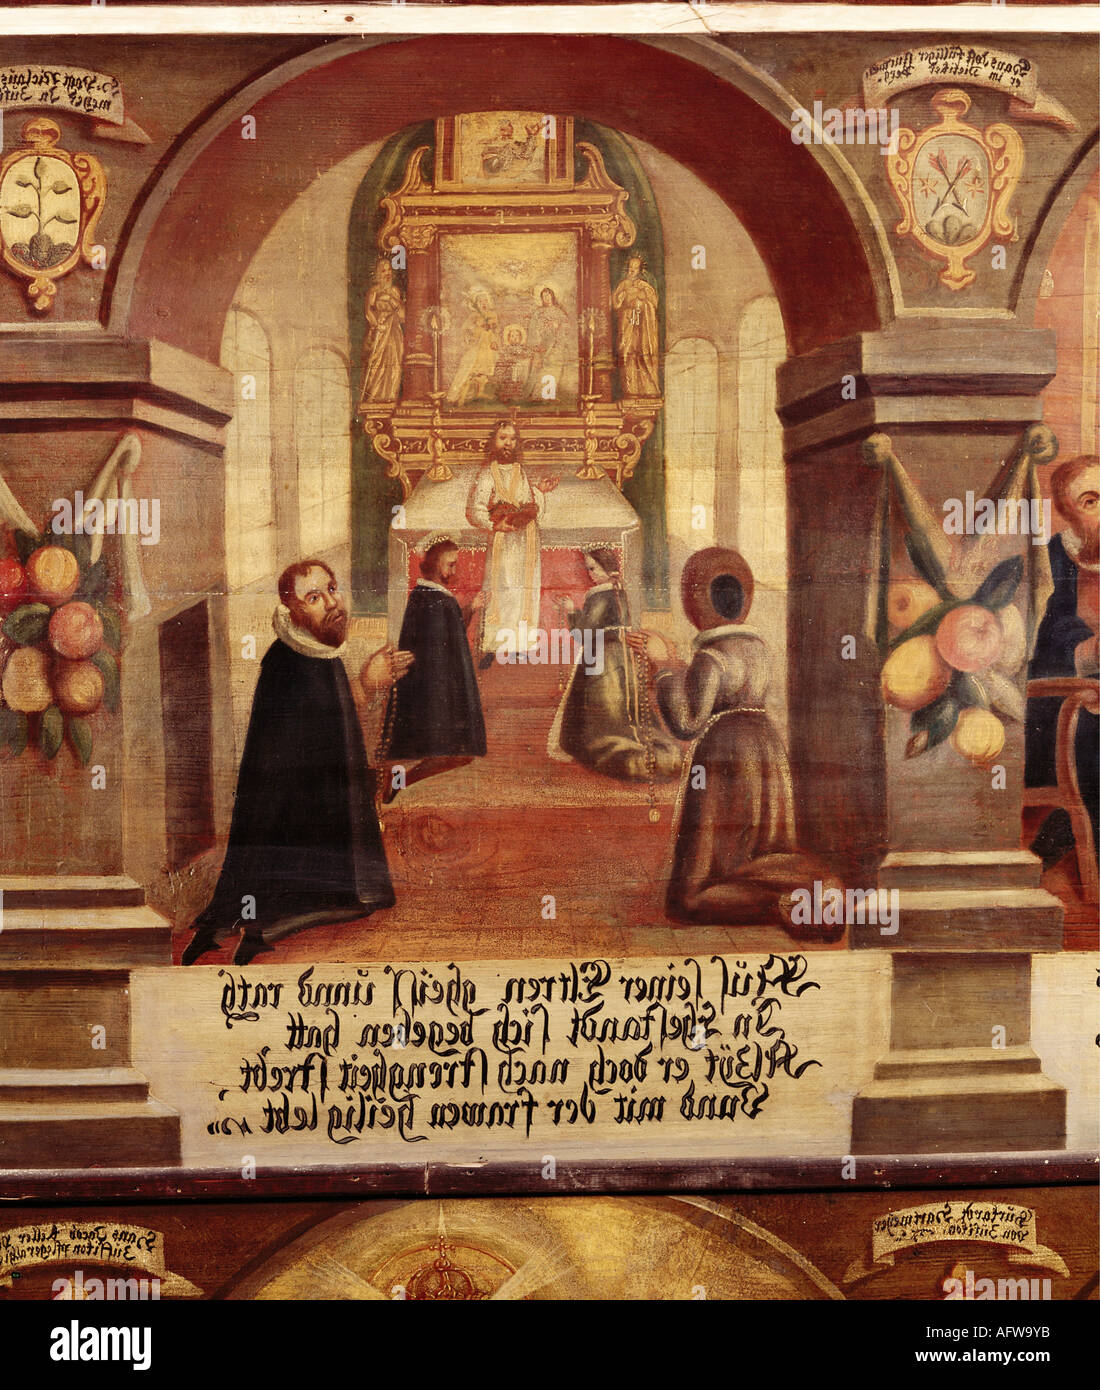 Nikolaus von Flue, 1417 - 21.3.1487, Schweizer Einsiedler, Askese, Mystiker, Heiliger, Hochzeit, Gemälde, 1677, Emmauskapelle, Bremgarten, Stockfoto